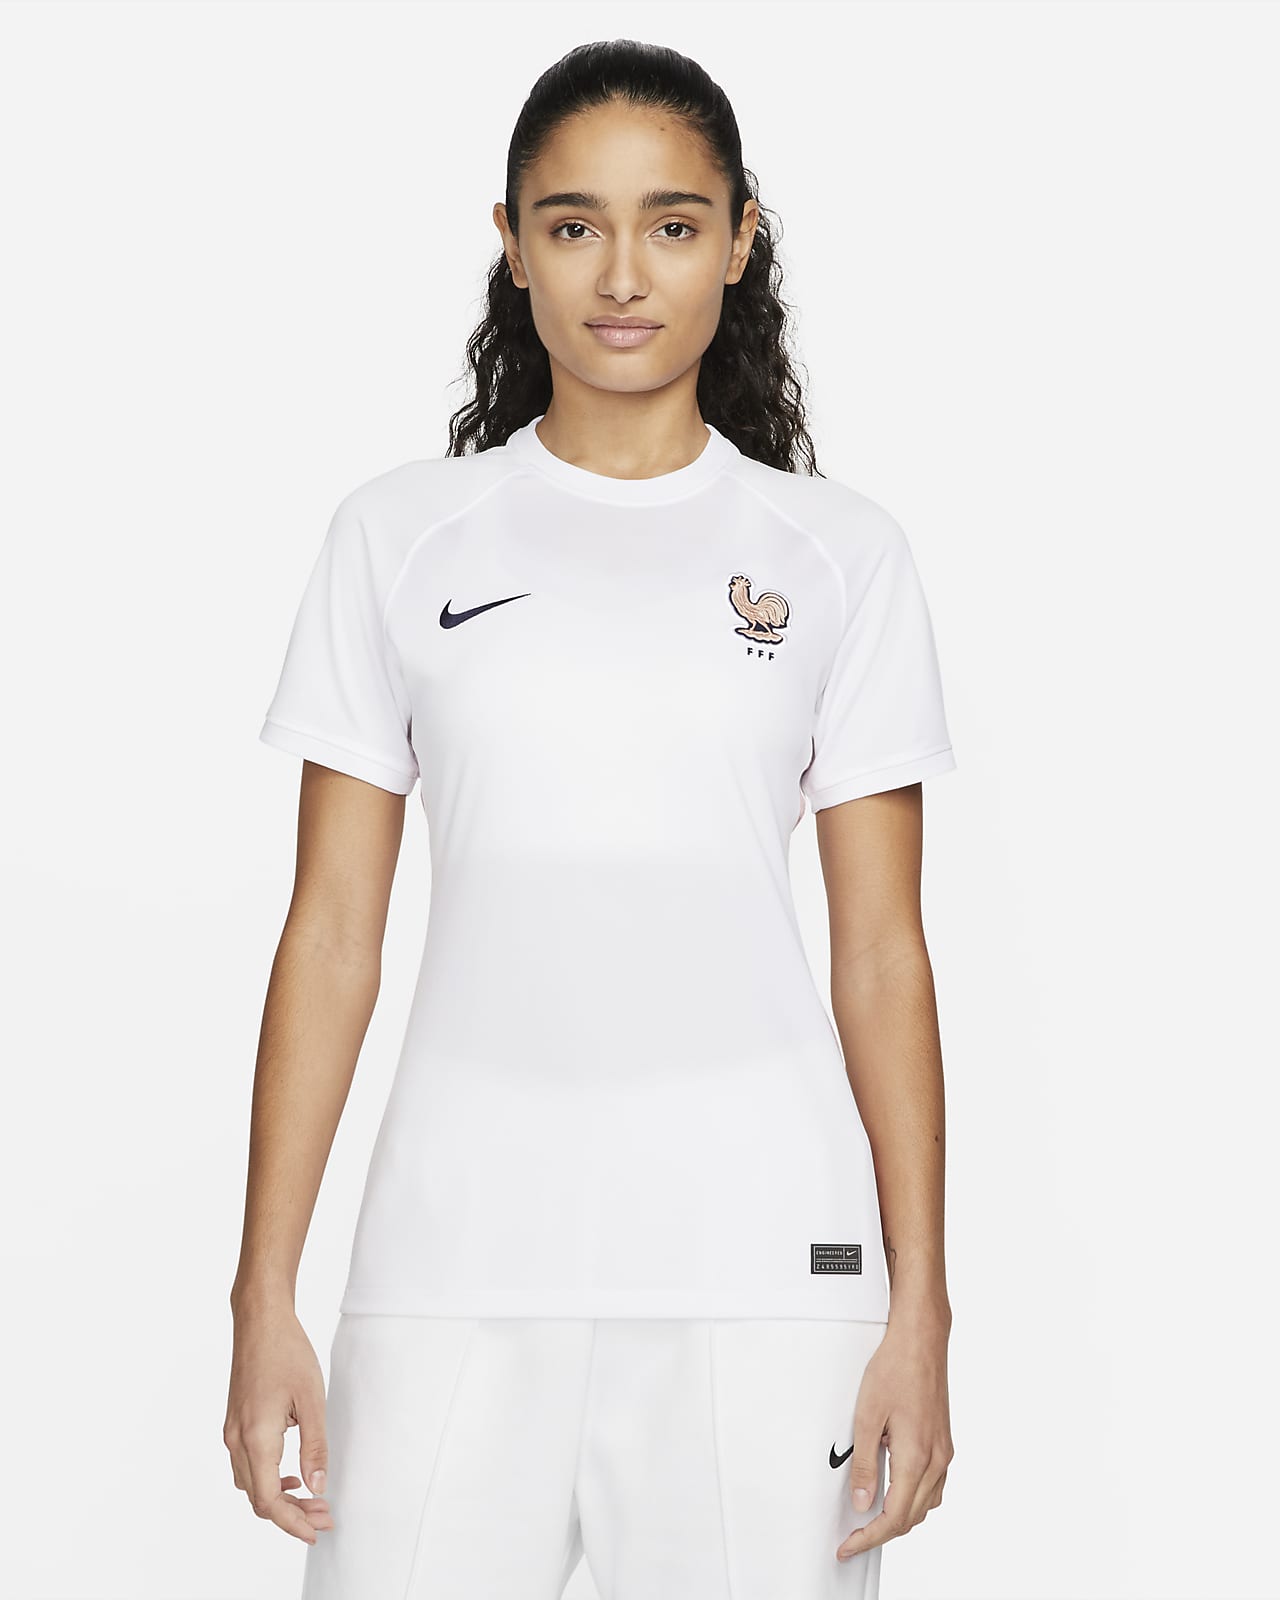 Pence Cordelia Antemano Segunda equipación Stadium FFF 2022 Camiseta de fútbol Nike Dri-FIT - Mujer.  Nike ES